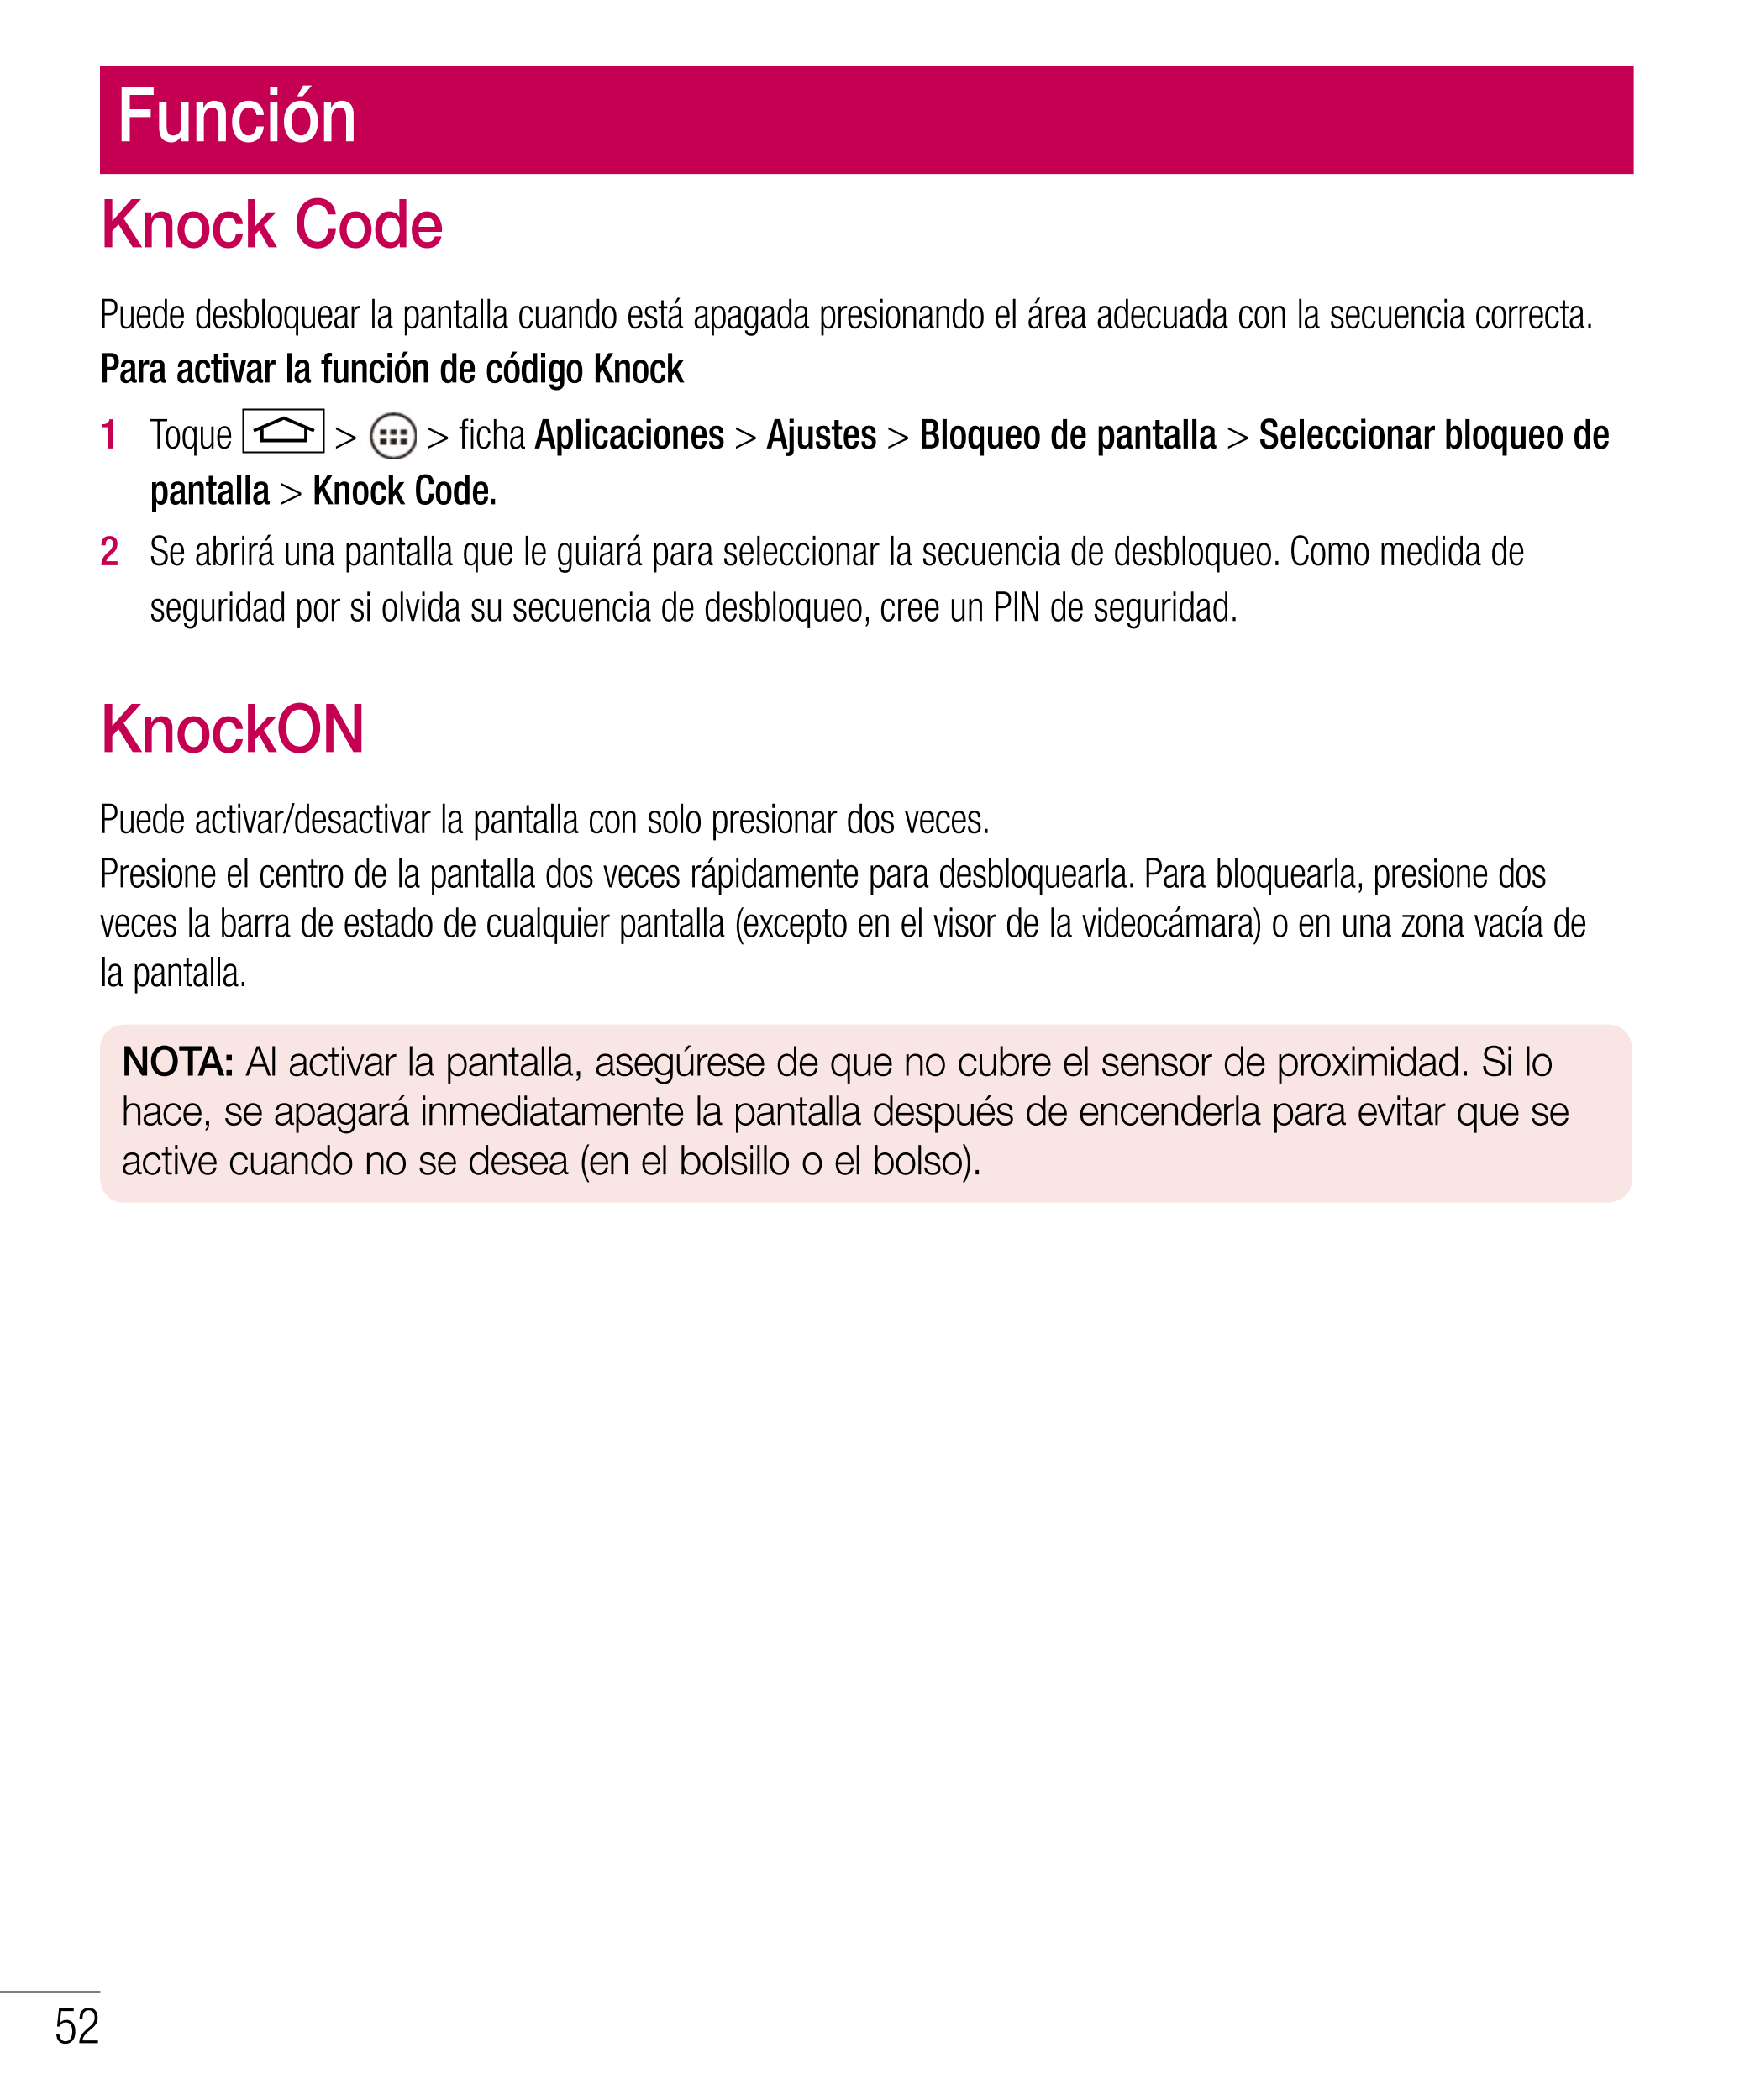 Función
Knock Code
Puede desbloquear la pantalla cuando está apagada presionando el área adecuada con la secuencia correcta.
Par